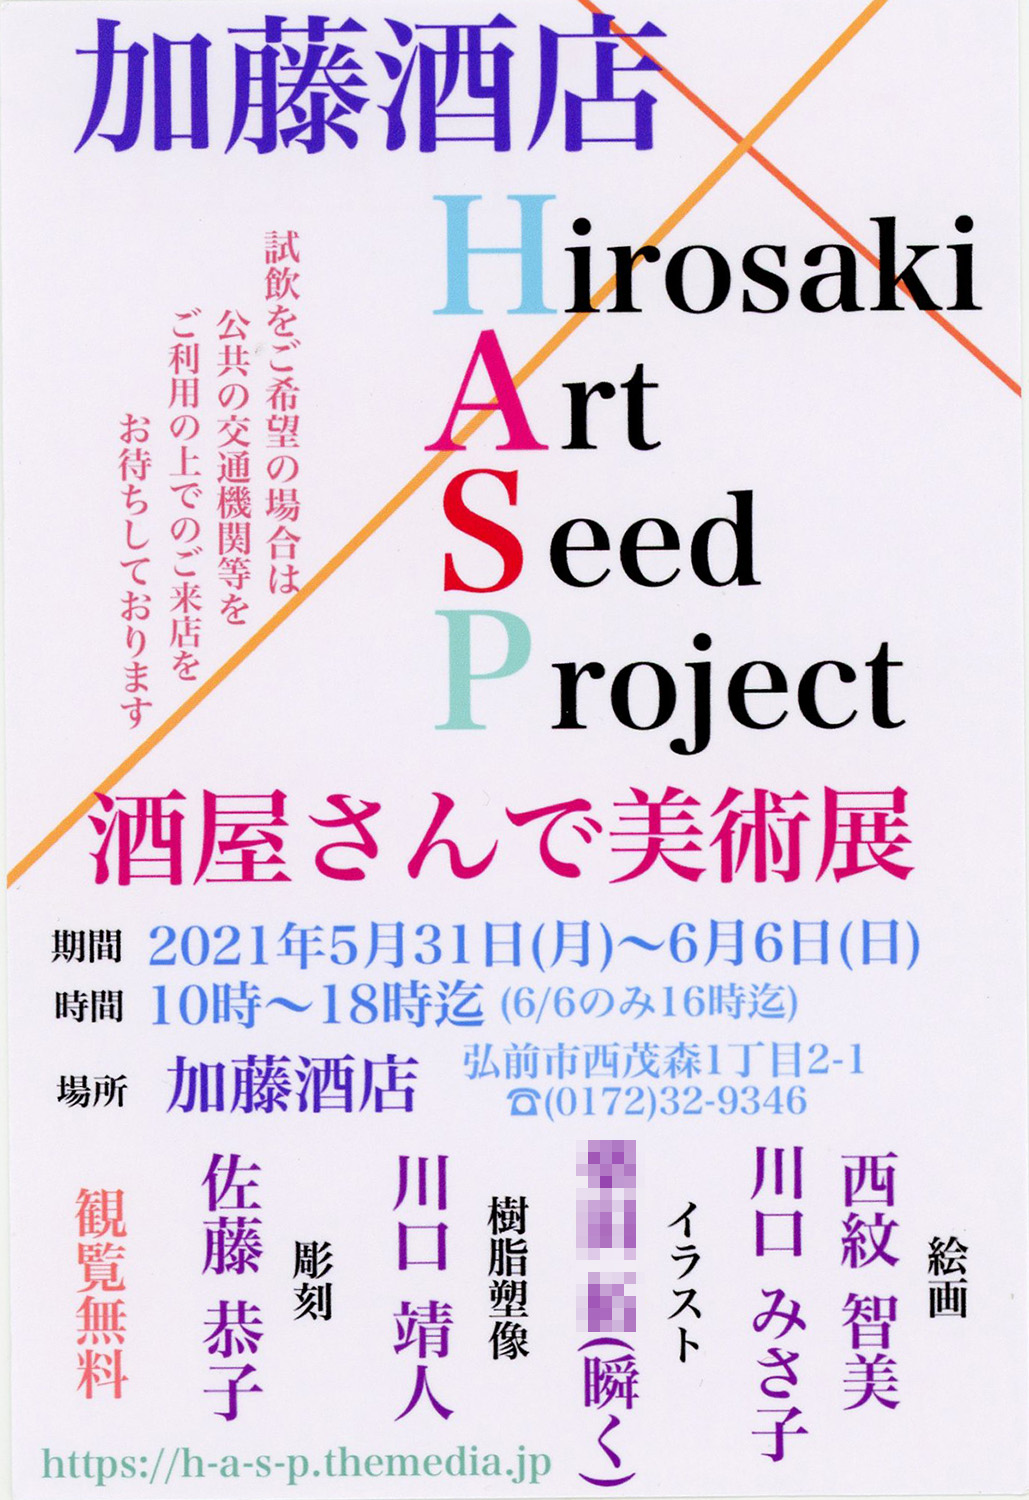 瞬く 絵のお仕事募集中 V Twitter 加藤酒店 Hirosaki Art Seed Project 酒屋さんで美術展 始まりました 21年5月31日 月 6月6日 日 の日程で開催中です 私もイラスト8点で参加させていただきます 会場に わたしのスター日記セレクション も少し